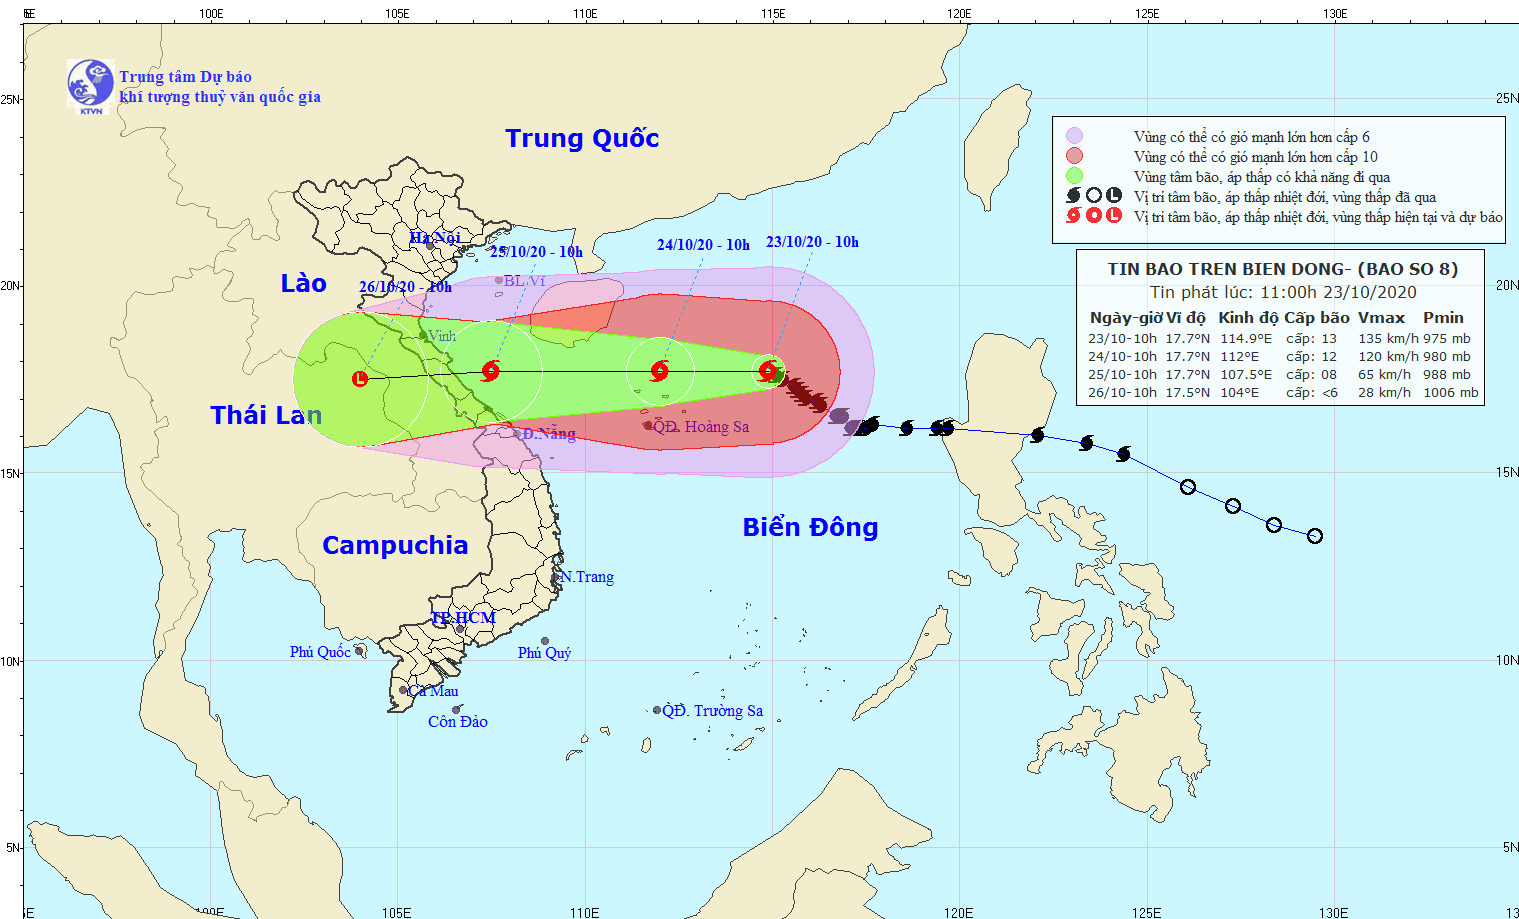 Ven biển từ Hà Tĩnh đến Quảng Trị sẽ bị ảnh hưởng nhiều nhất bởi bão số 8 - Ảnh 1.